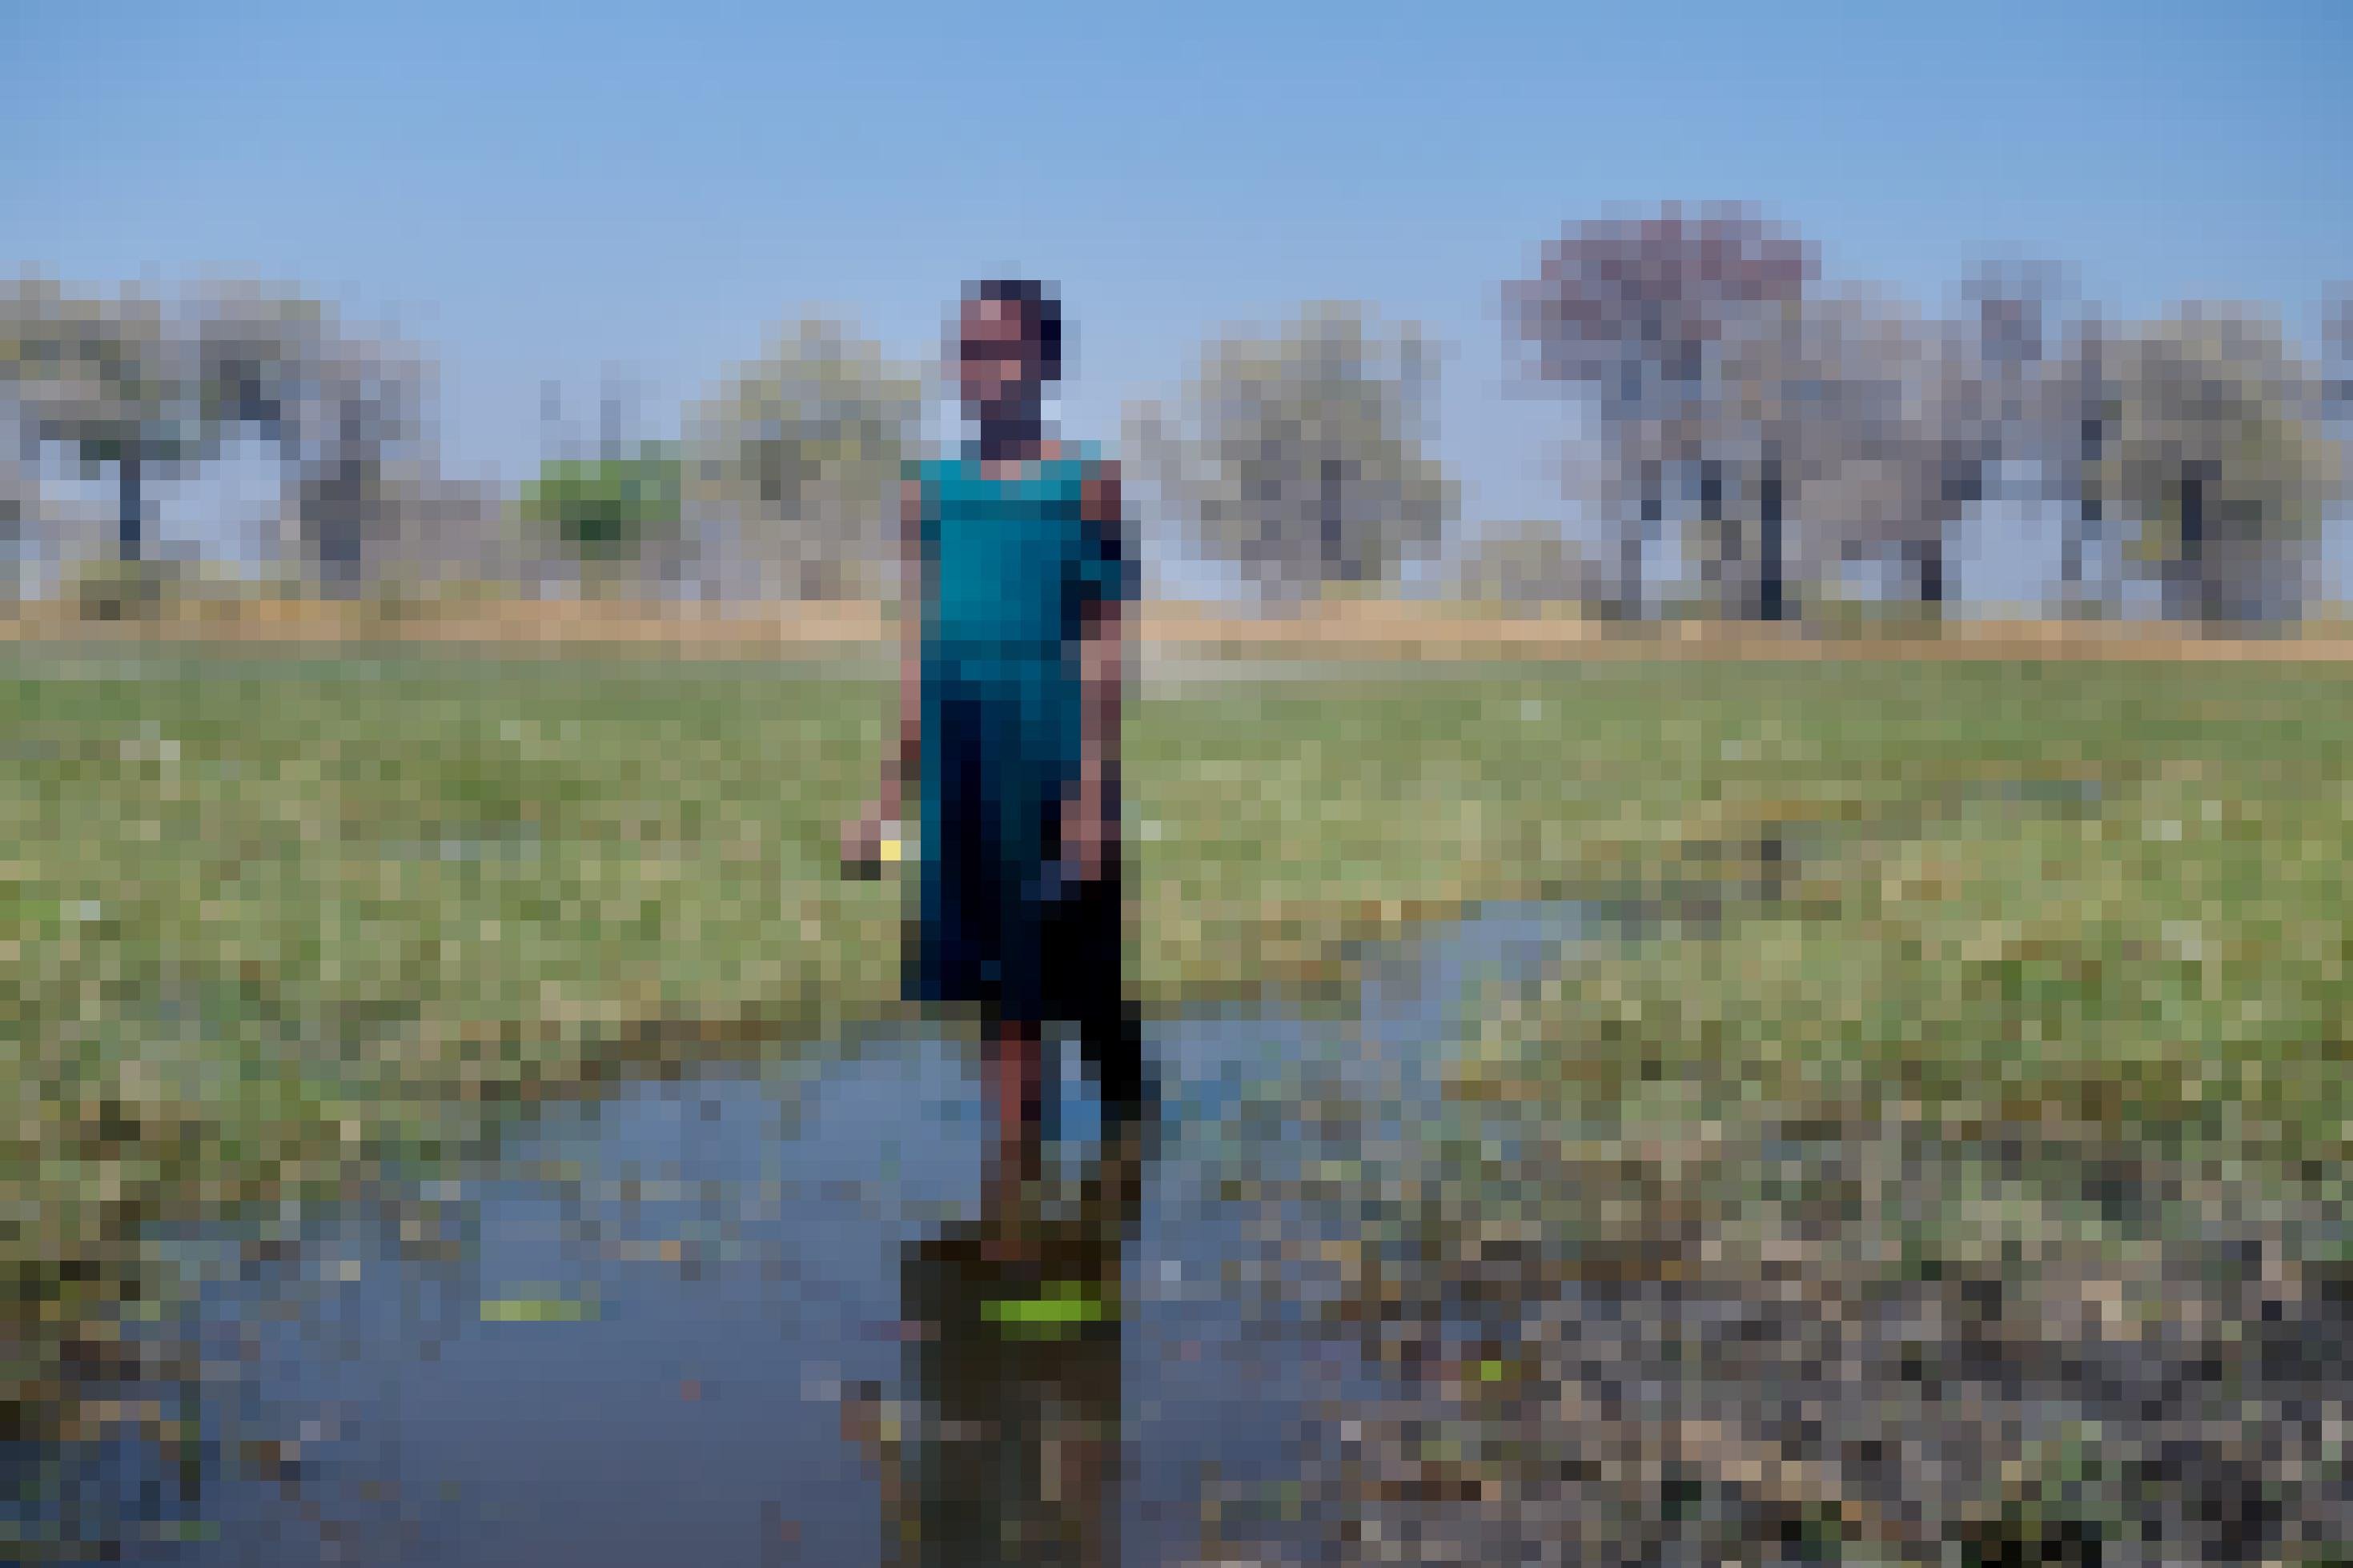 Das Mädchen steht bis zu den Knöcheln im Wasser in der weiten Landschaft, in der Hand hält sie eine Wasserlilie, im Hintergrund sind Bäume zu sehen.